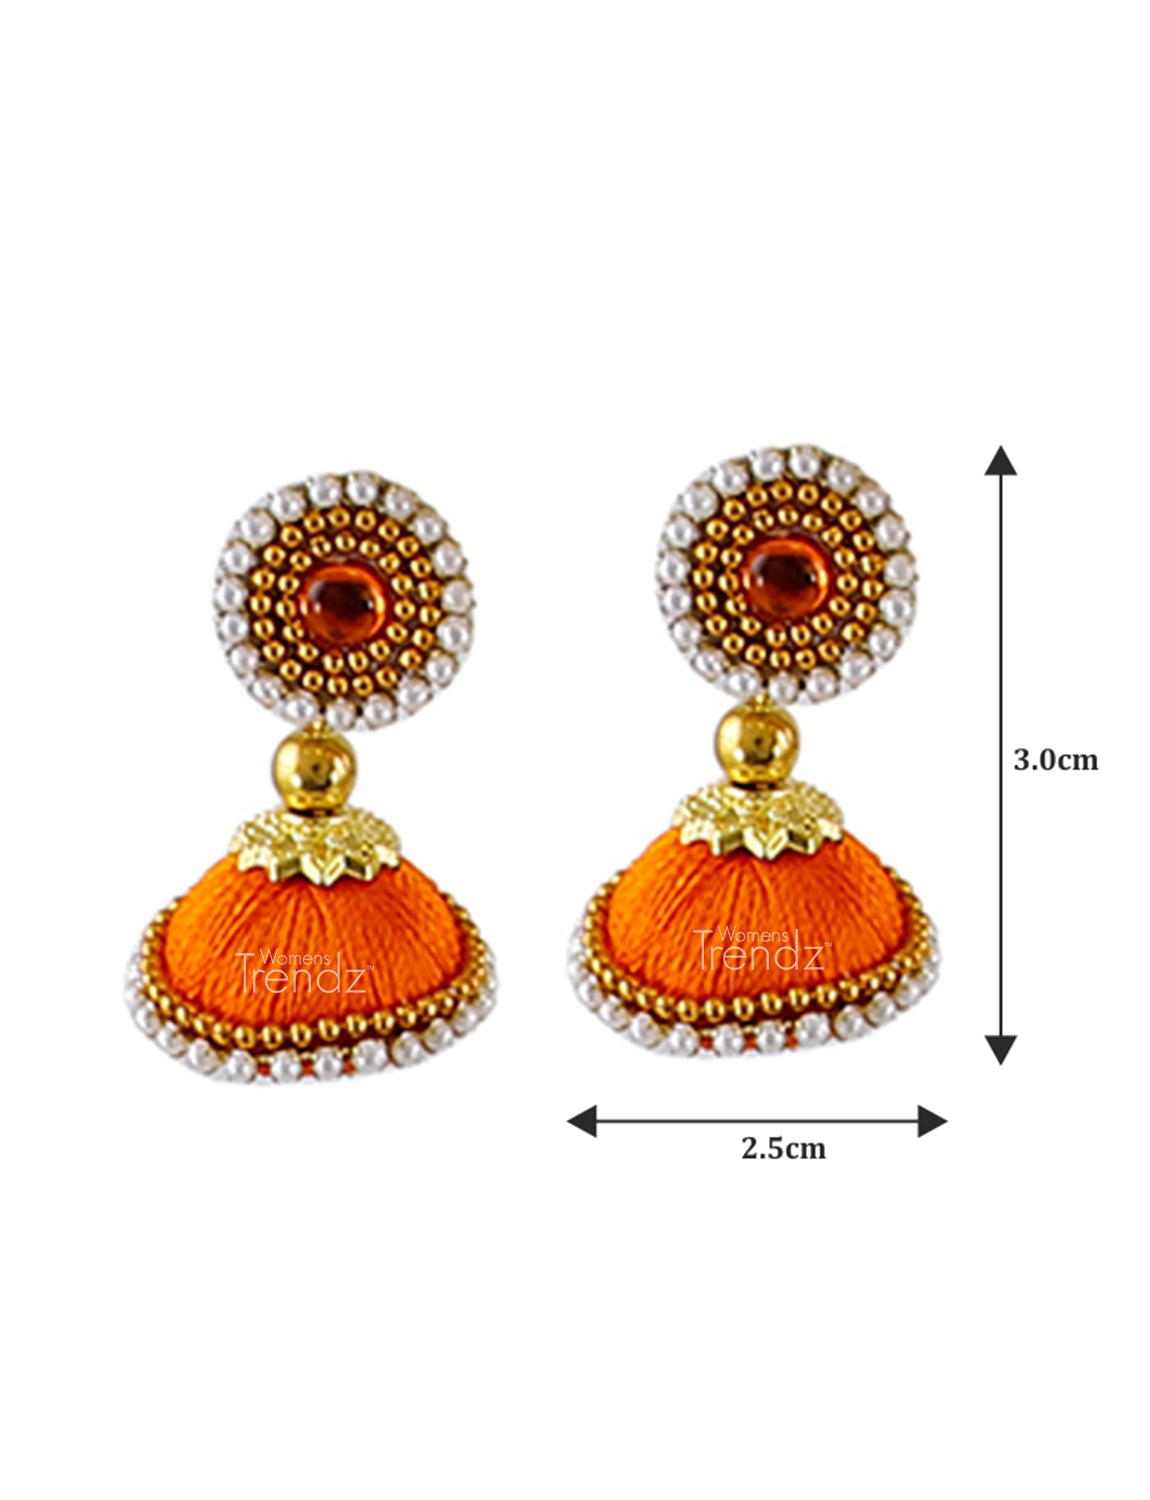 Orange Silk Thread Necklace Set